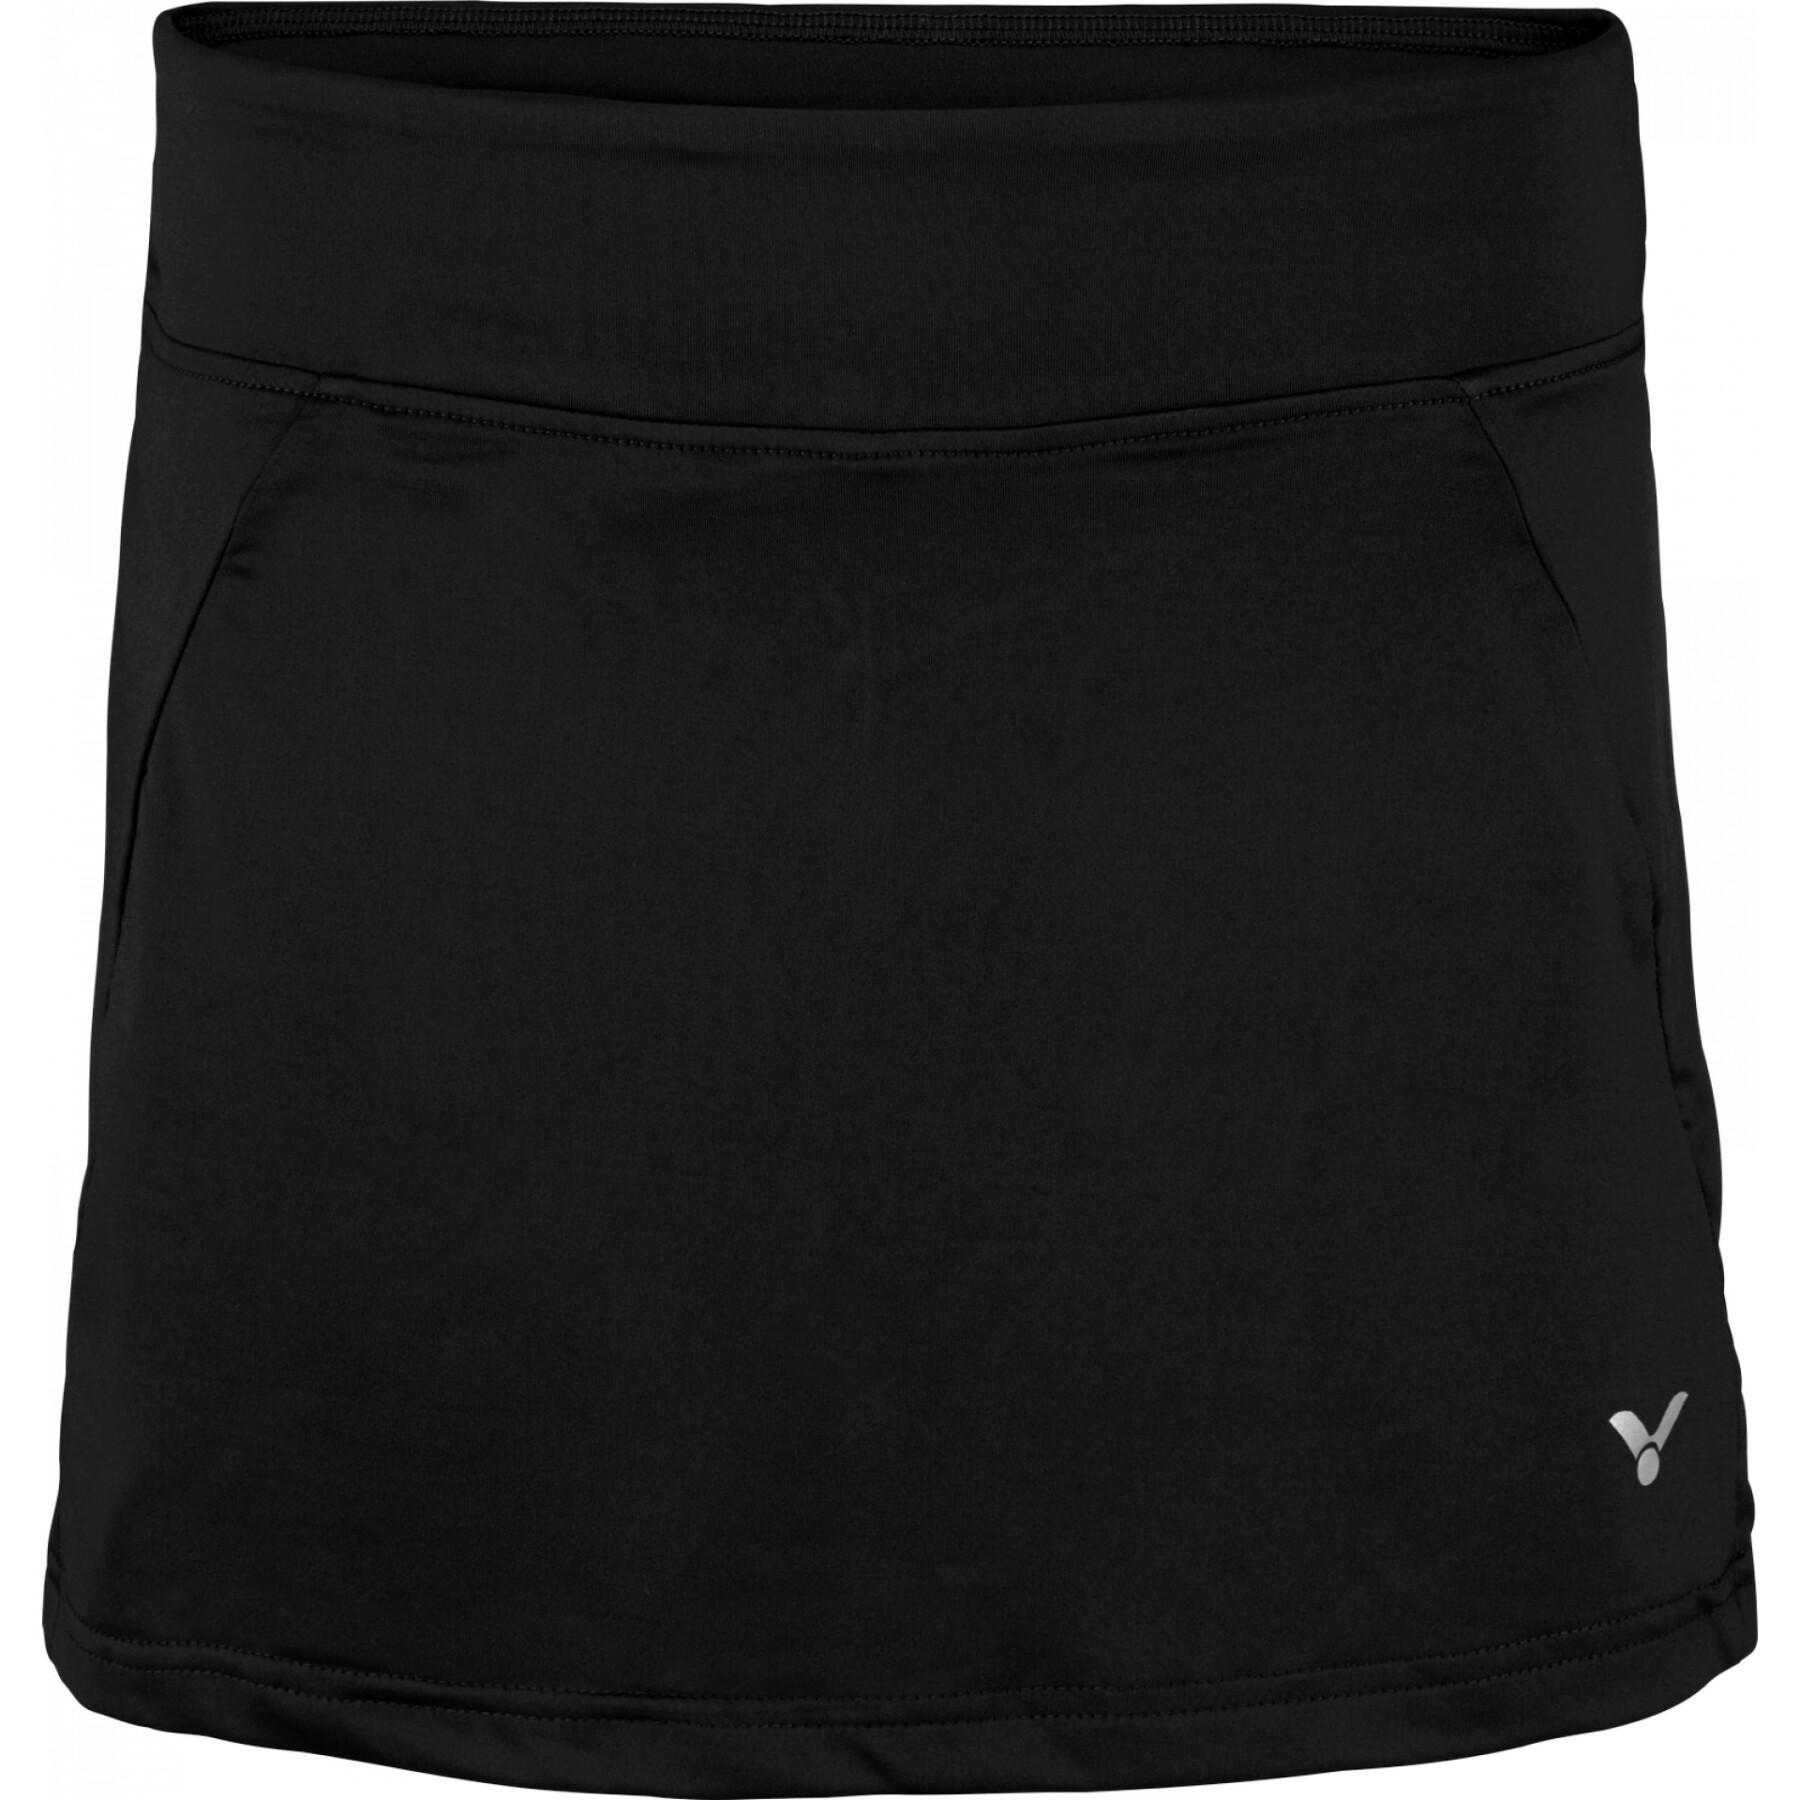 Women's skirt-short Victor 4188